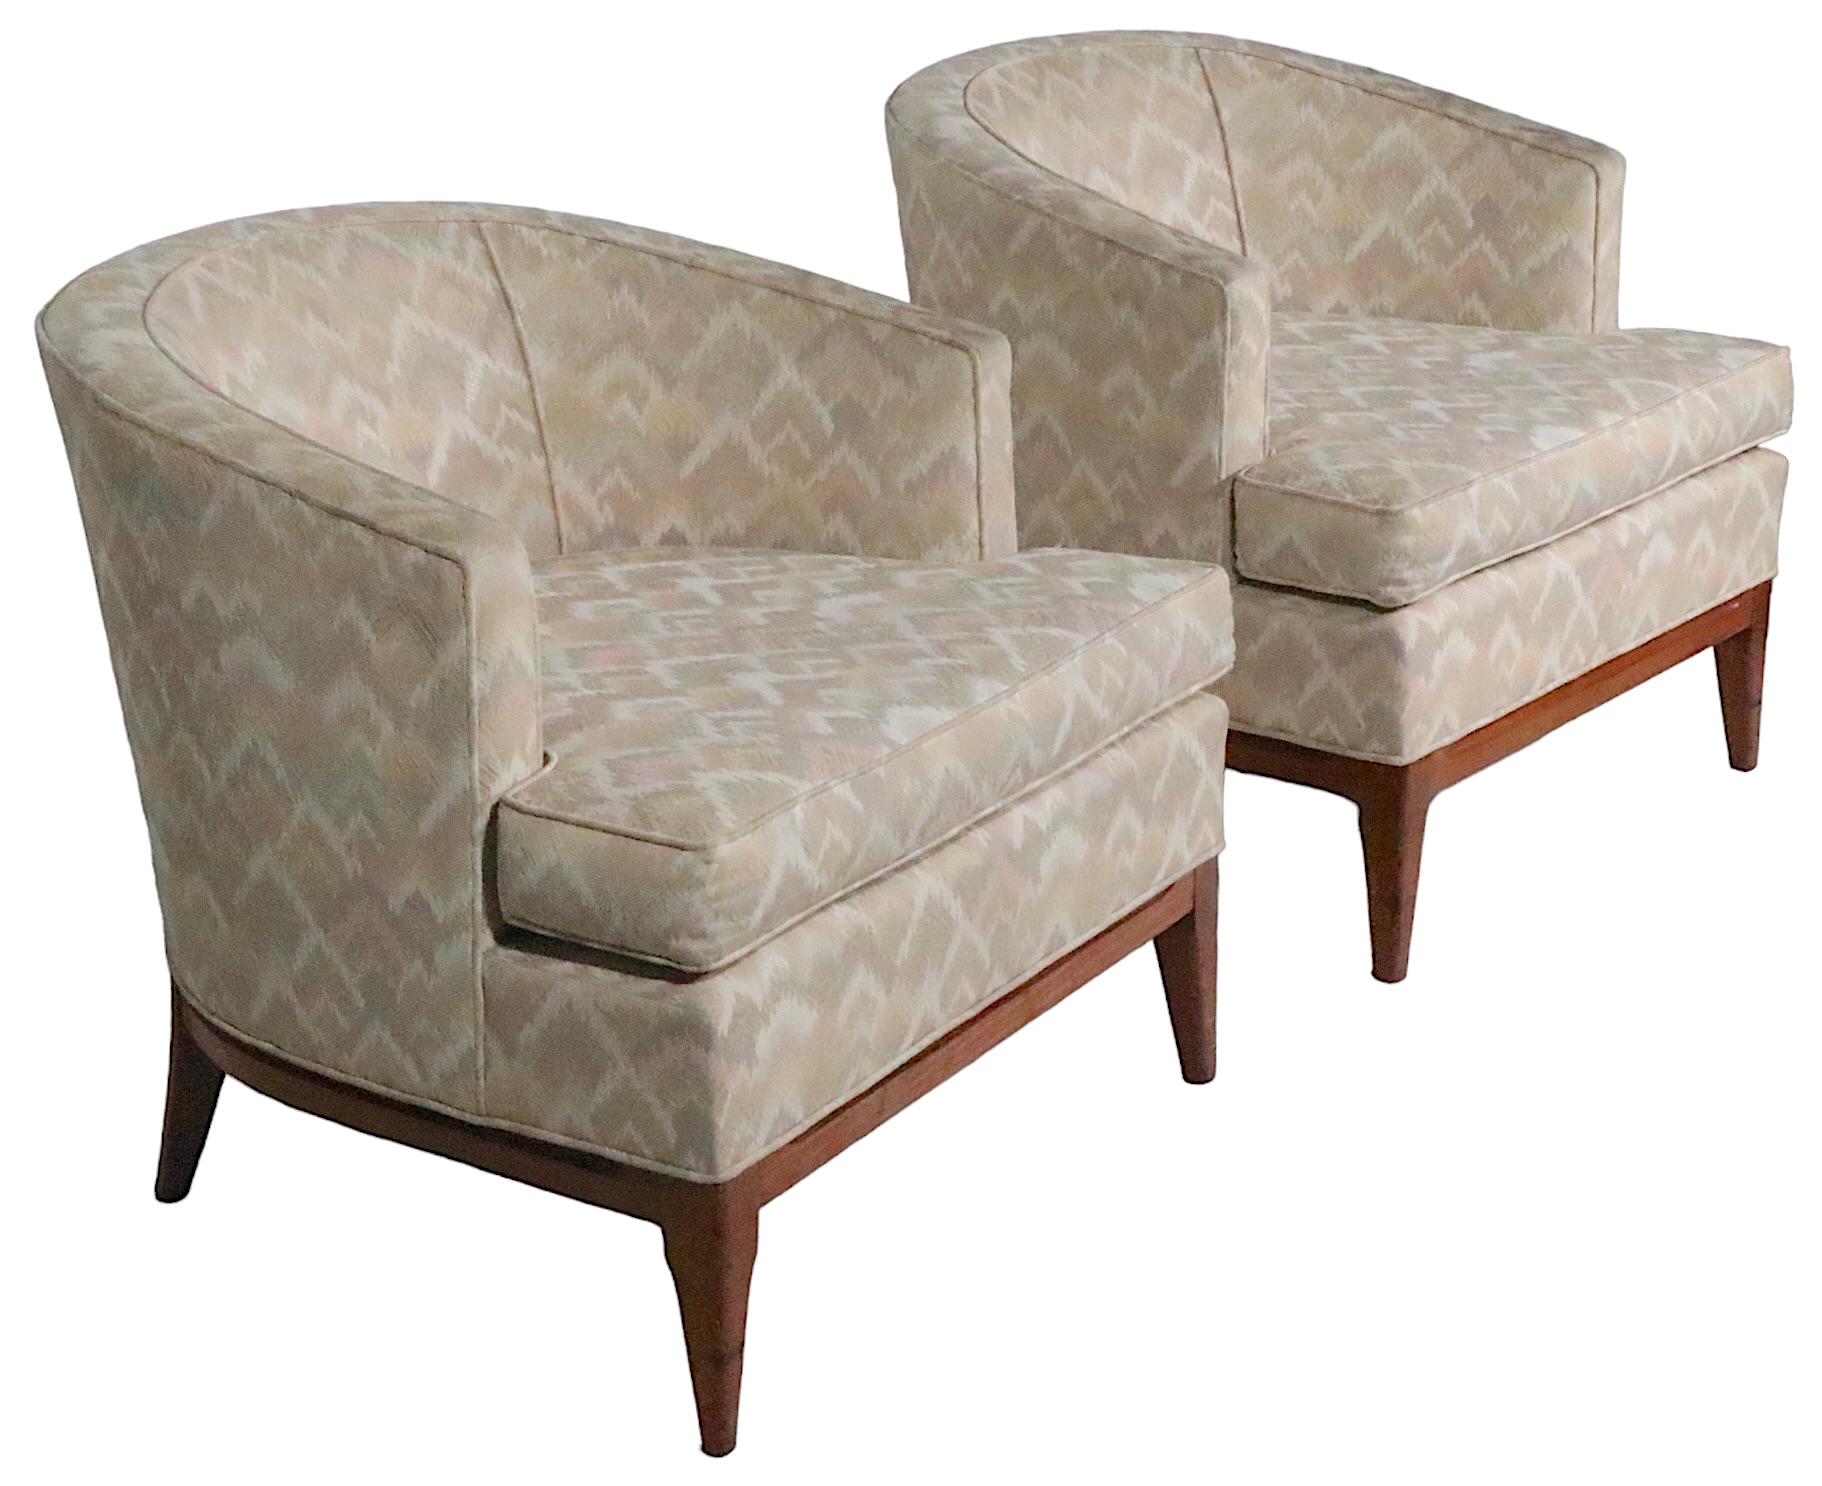 Schickes Paar Wannenstühle im Hollywood-Regency-Stil aus der Jahrhundertmitte, im Stil von Robsjohn Gibbings. Beide Stühle sind in sehr gutem, originalem, sauberem und gebrauchsfertigem Zustand und weisen nur leichte kosmetische